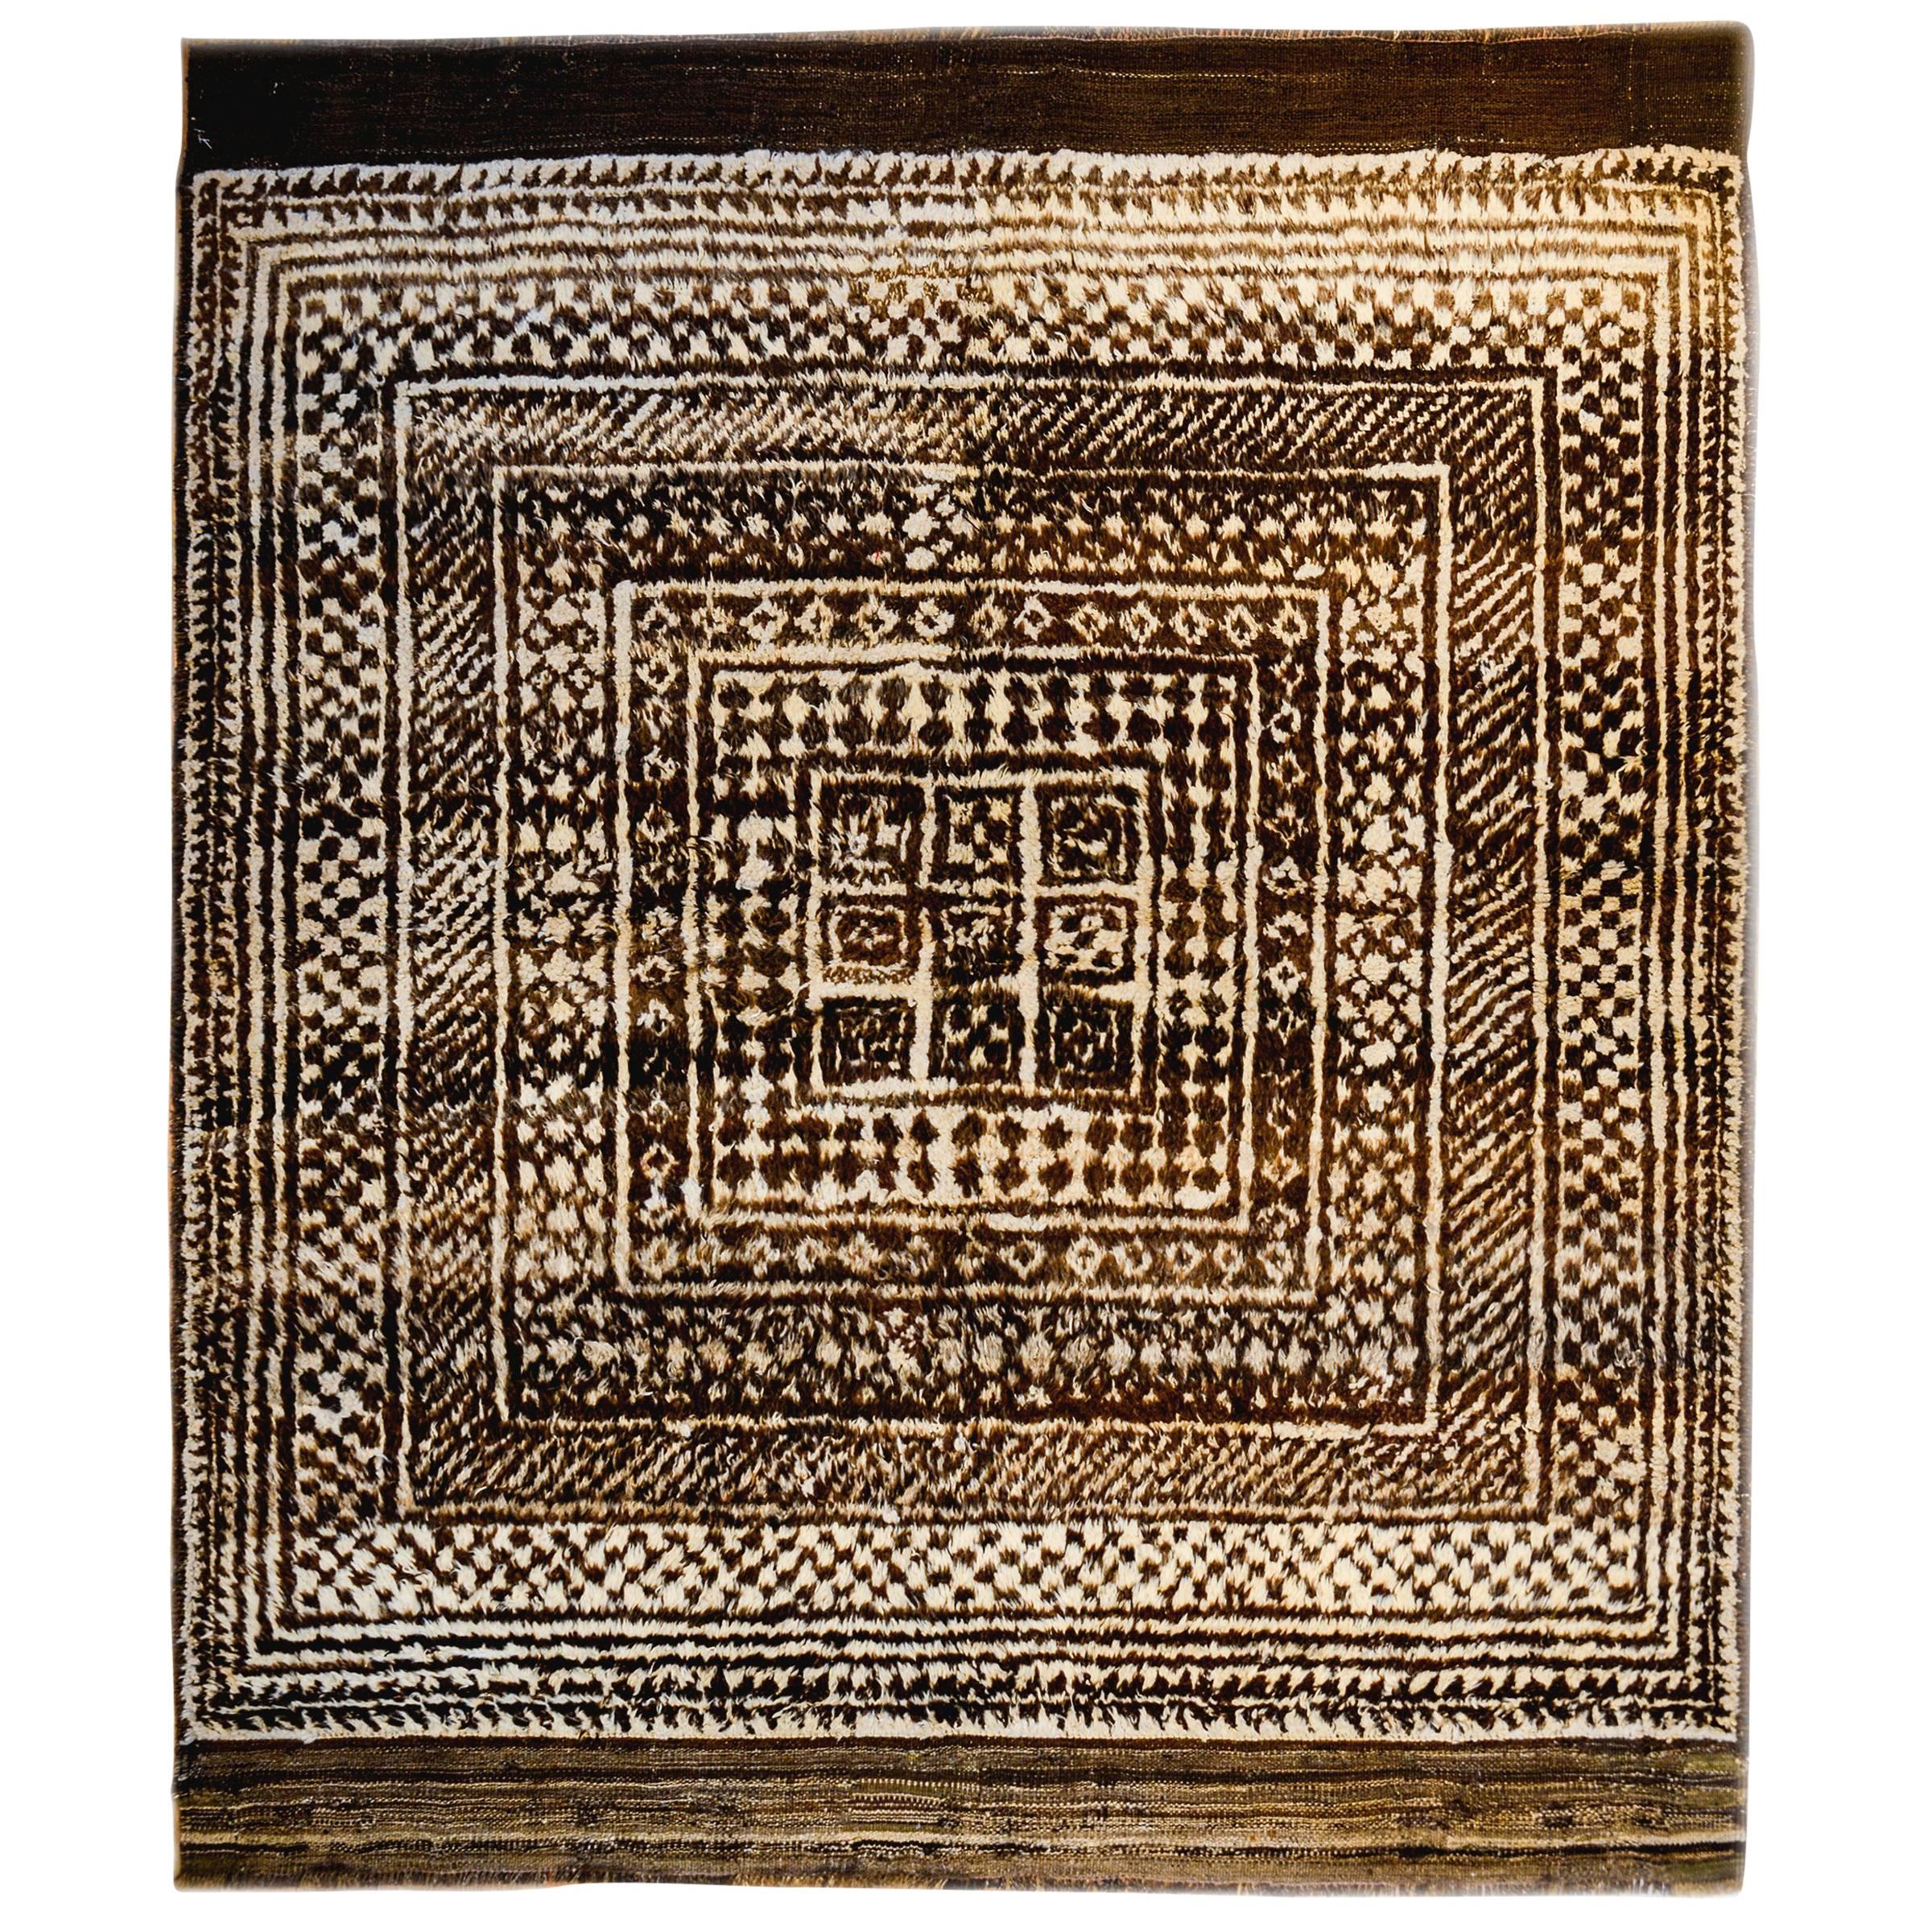 Gabbeh-Teppich aus dem 19. Jahrhundert